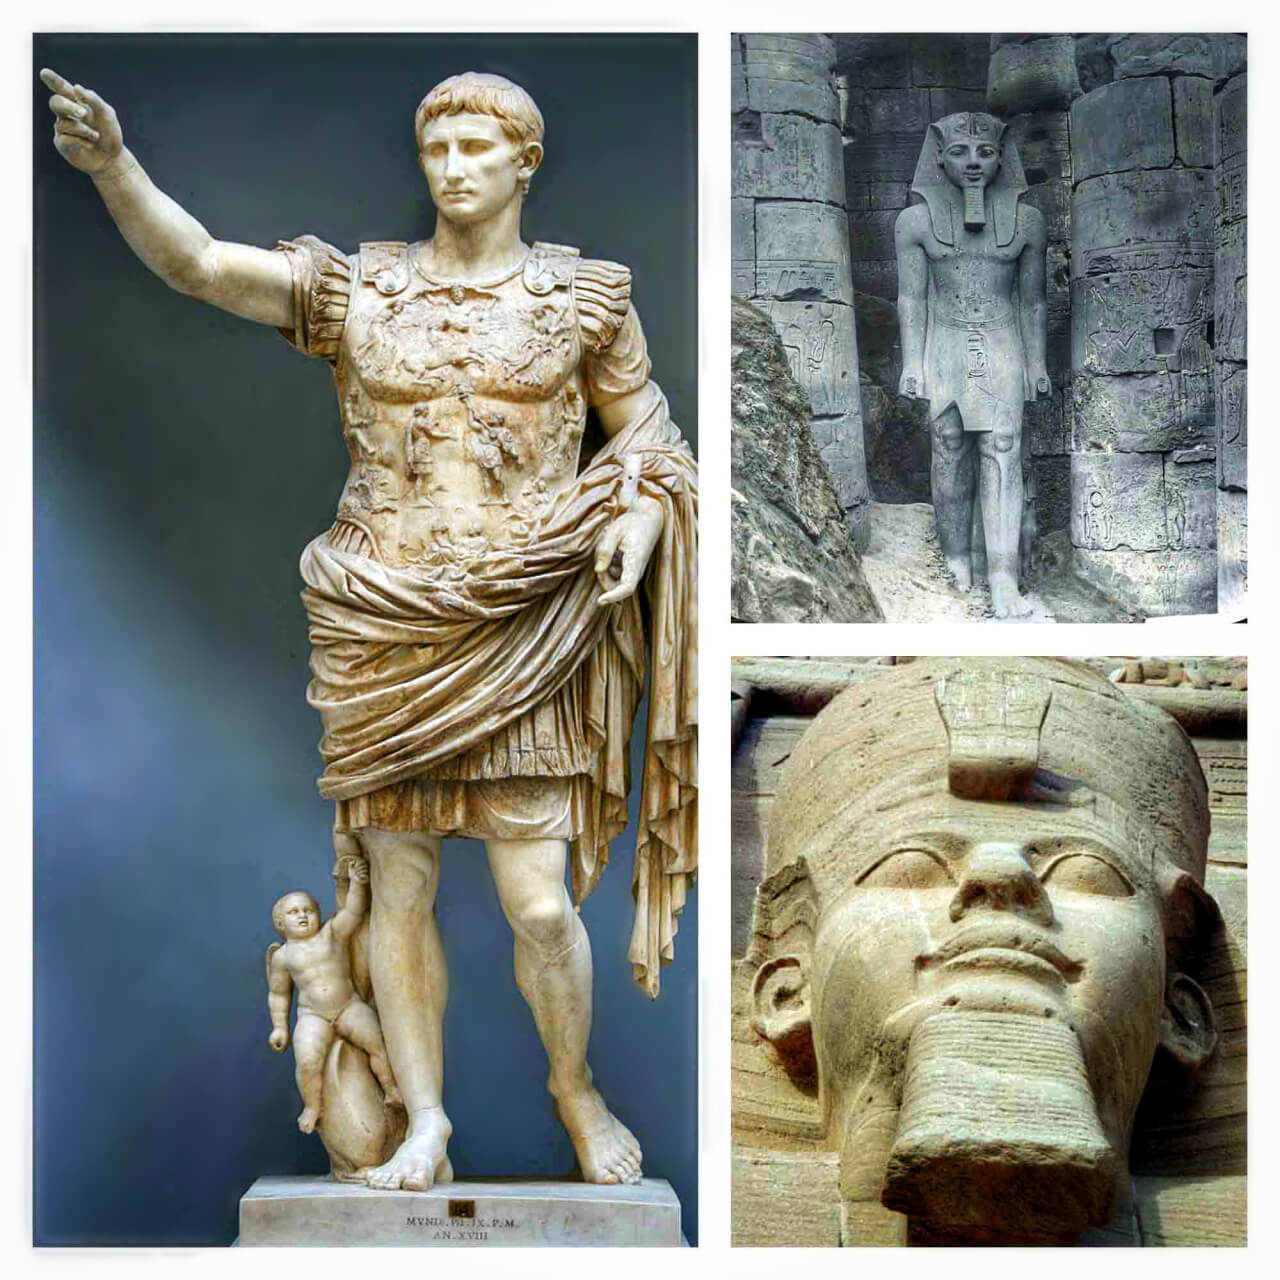 10 unique facts about Pantheon Rome limo Tours_Augustus Rome travel Blog